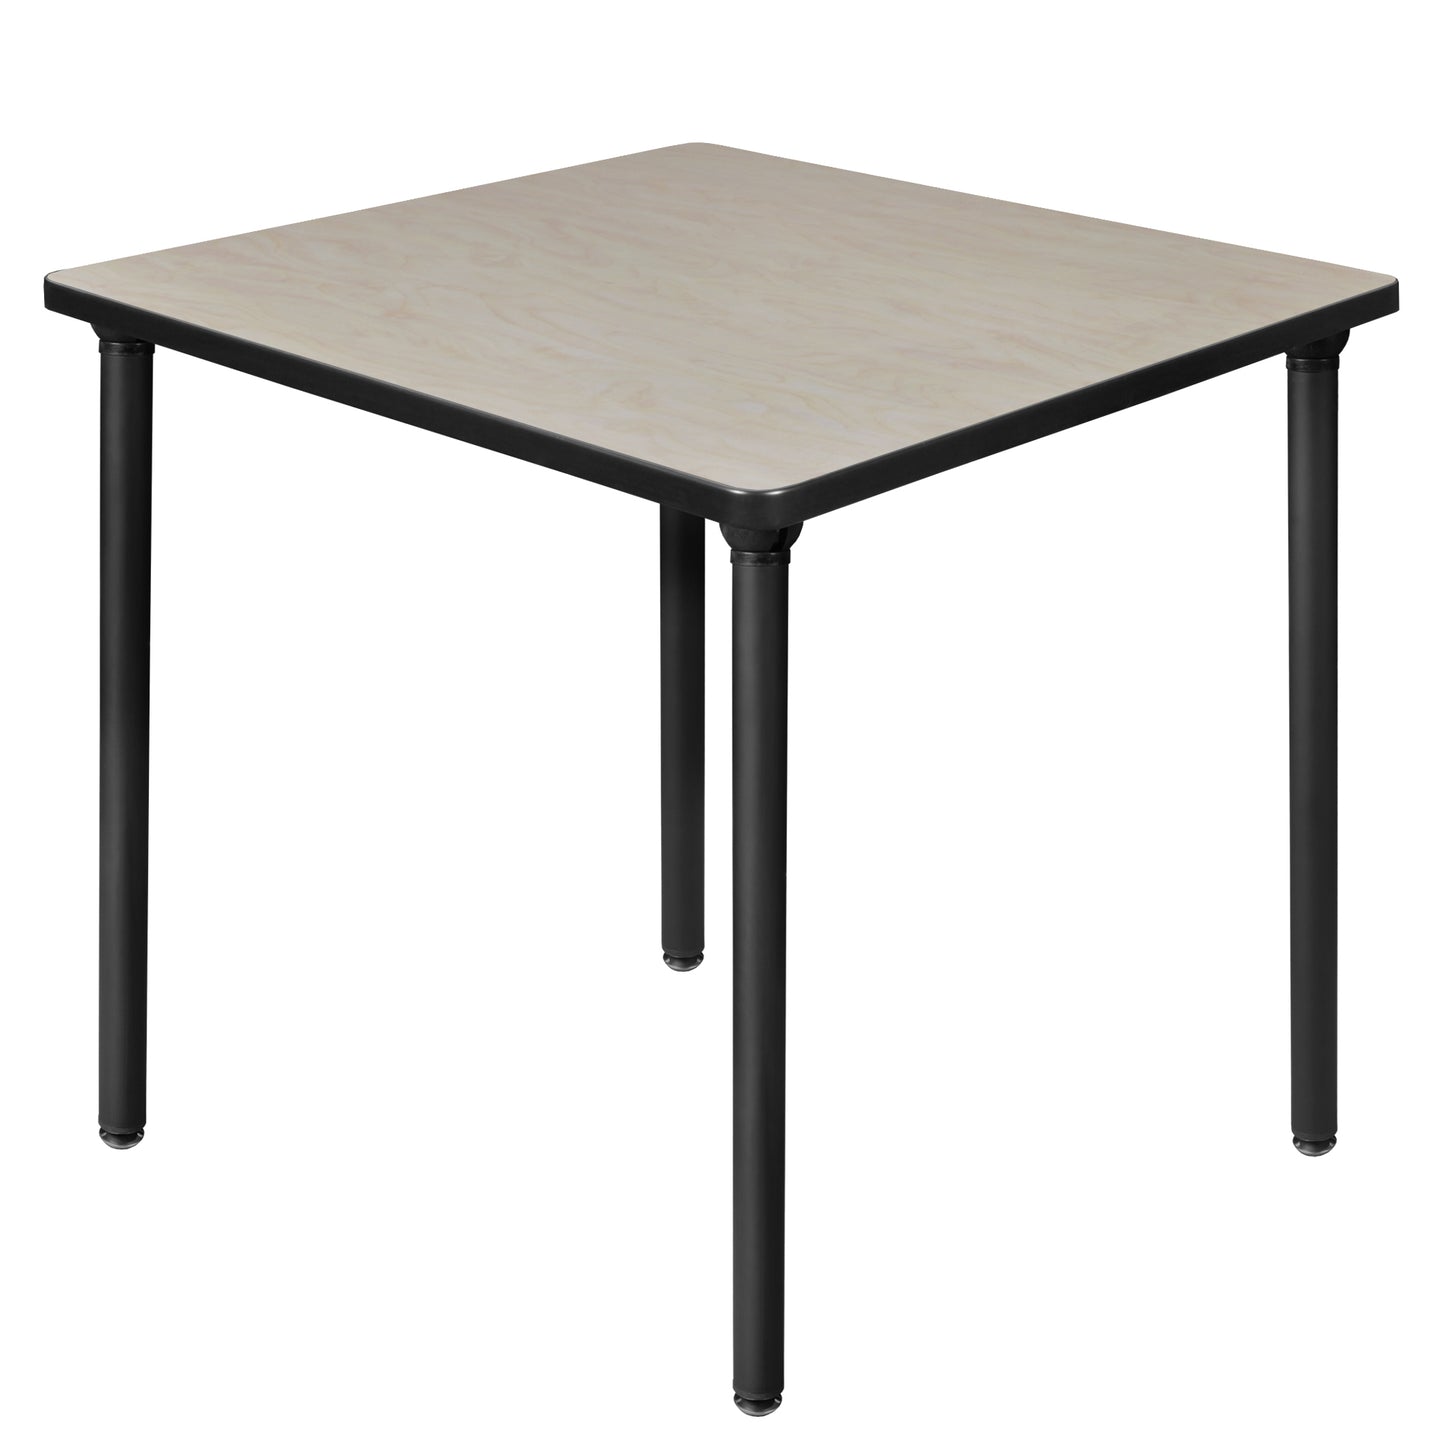 Regency Kee 30 in. Small Square Breakroom Table, Black Folding Legs